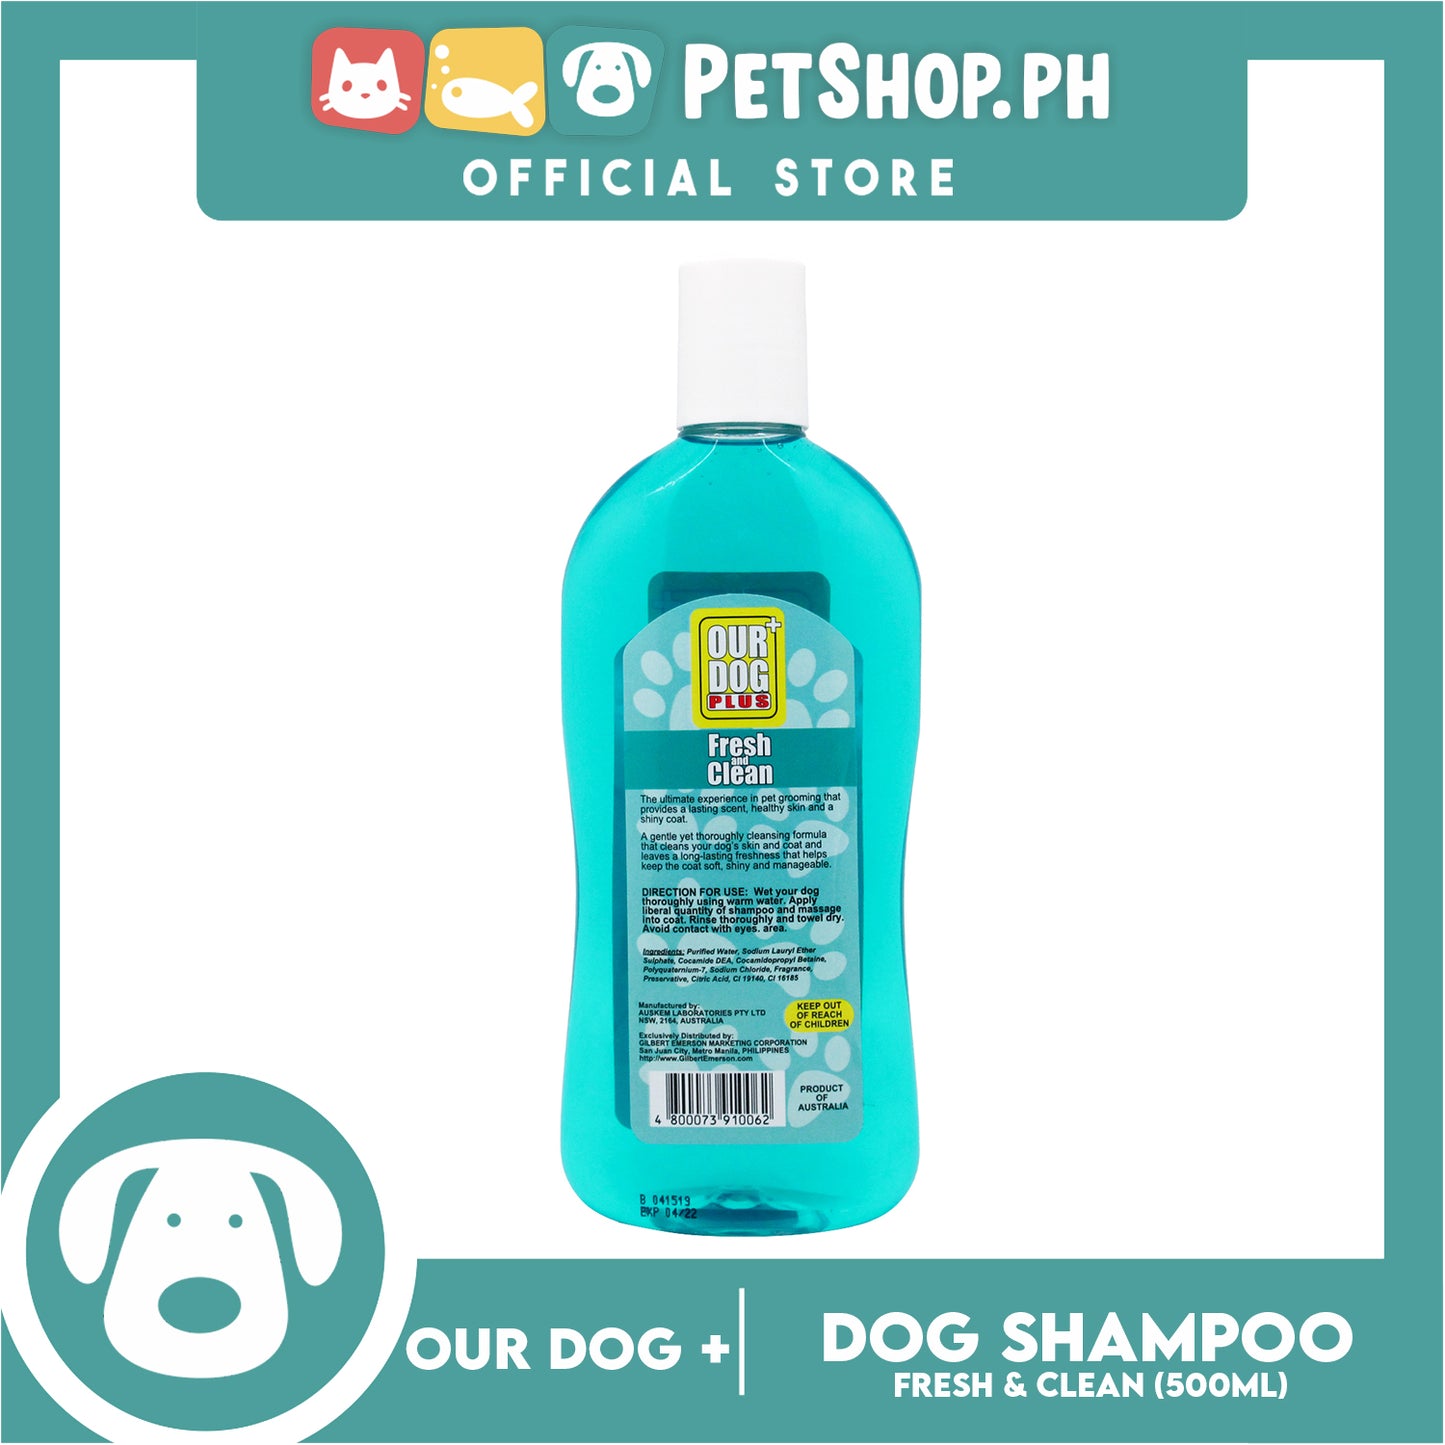 Our Dog Plus Fresh & Clean Shampoo 500ml